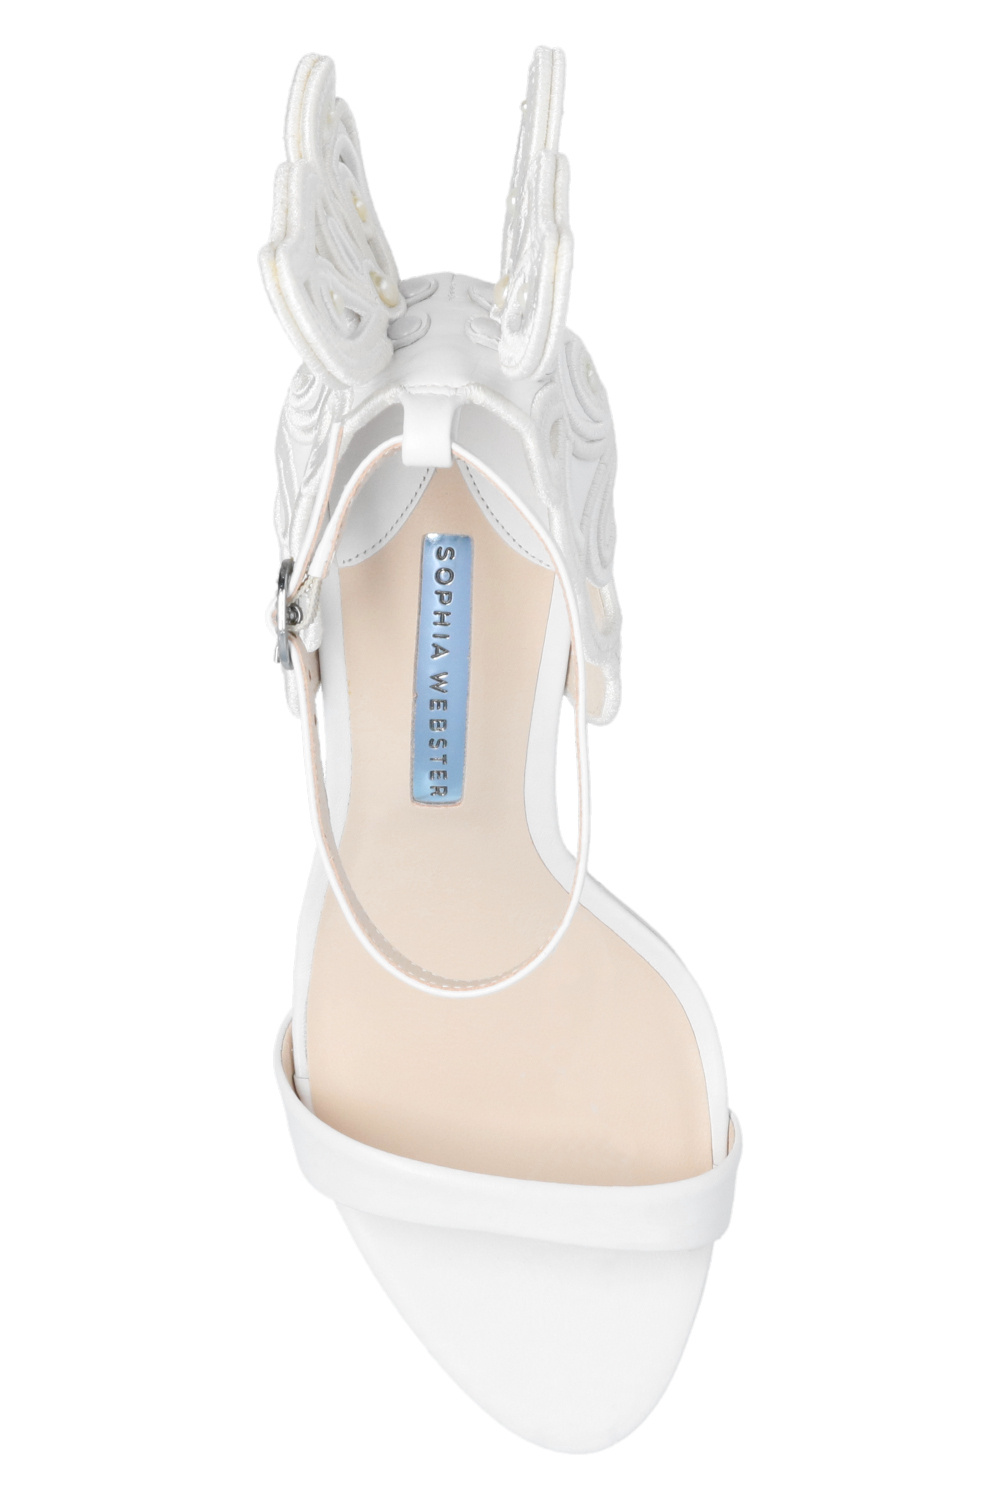 Sophia Webster ‘Chiara’ heeled tendr sandals